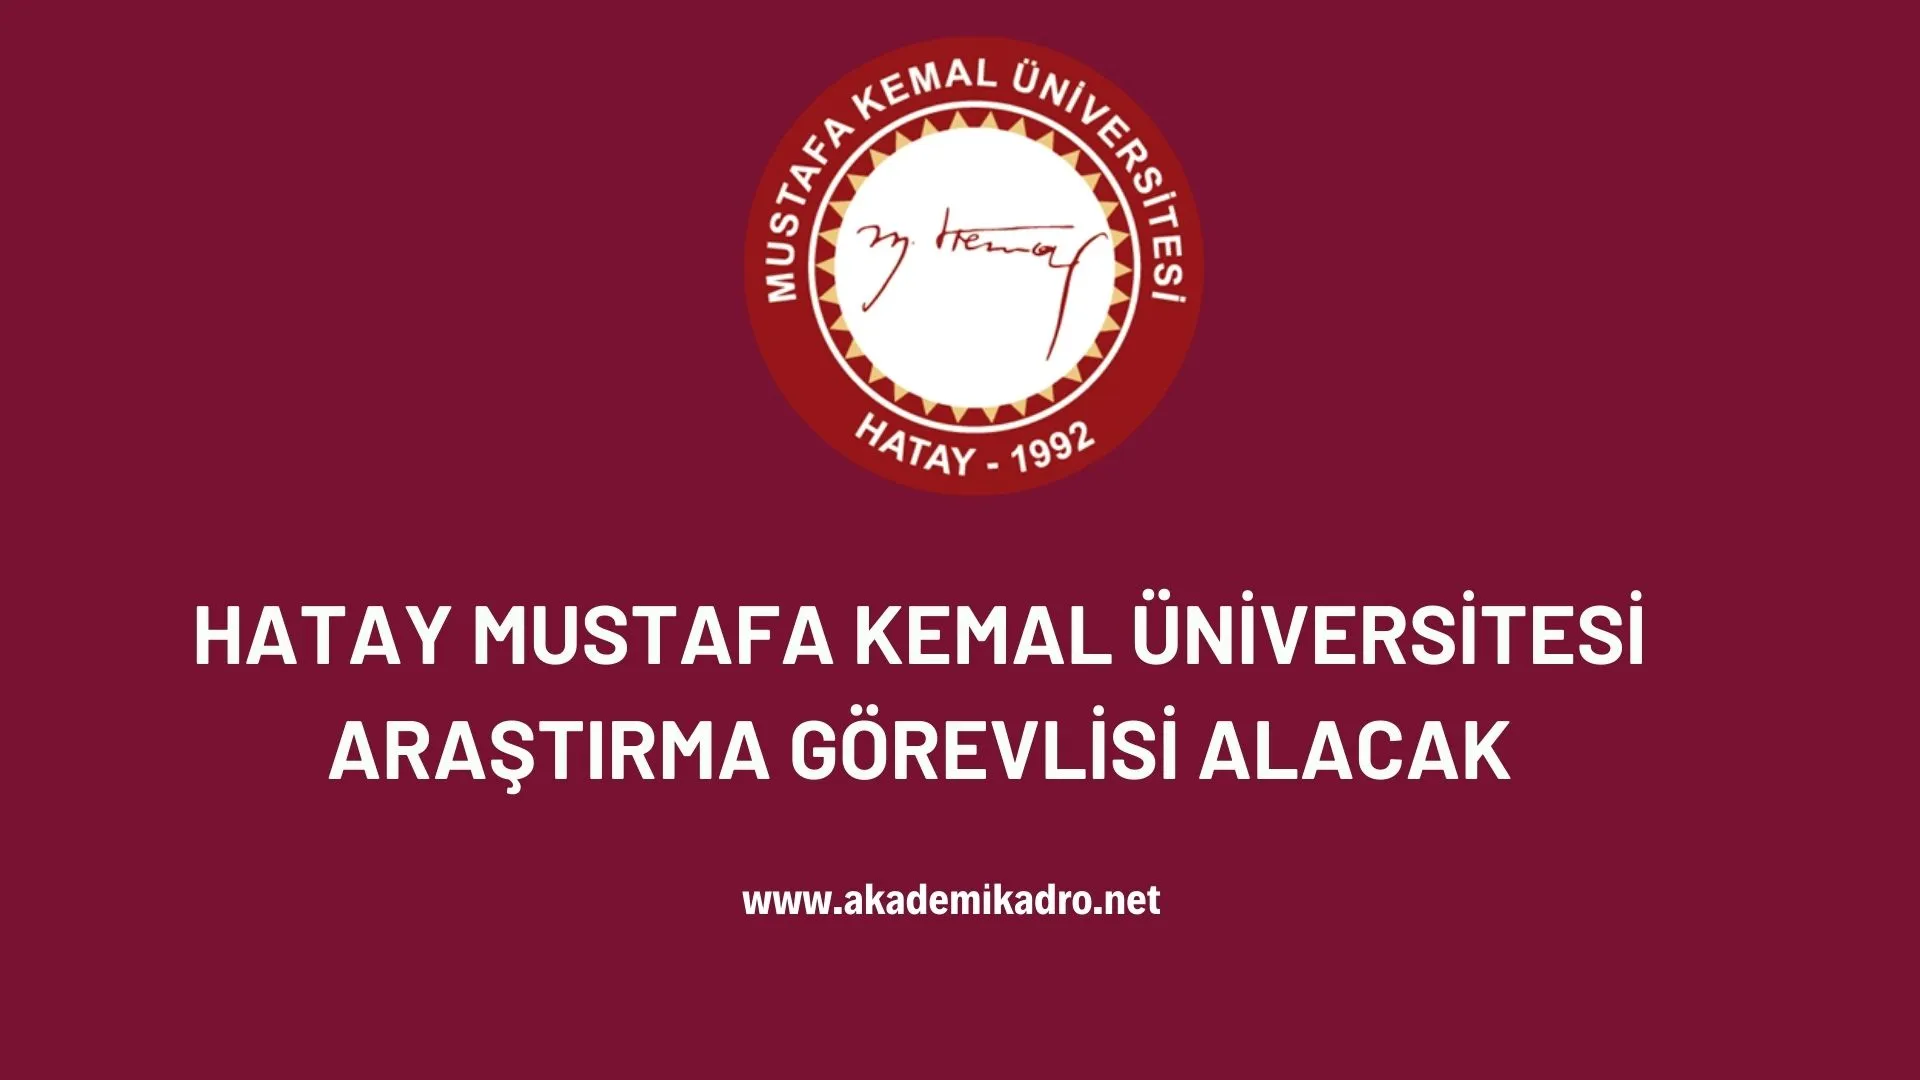 Hatay Mustafa Kemal Üniversitesi 9 Araştırma görevlisi alacaktır. son başvuru tarihi 13 Ekim 2022